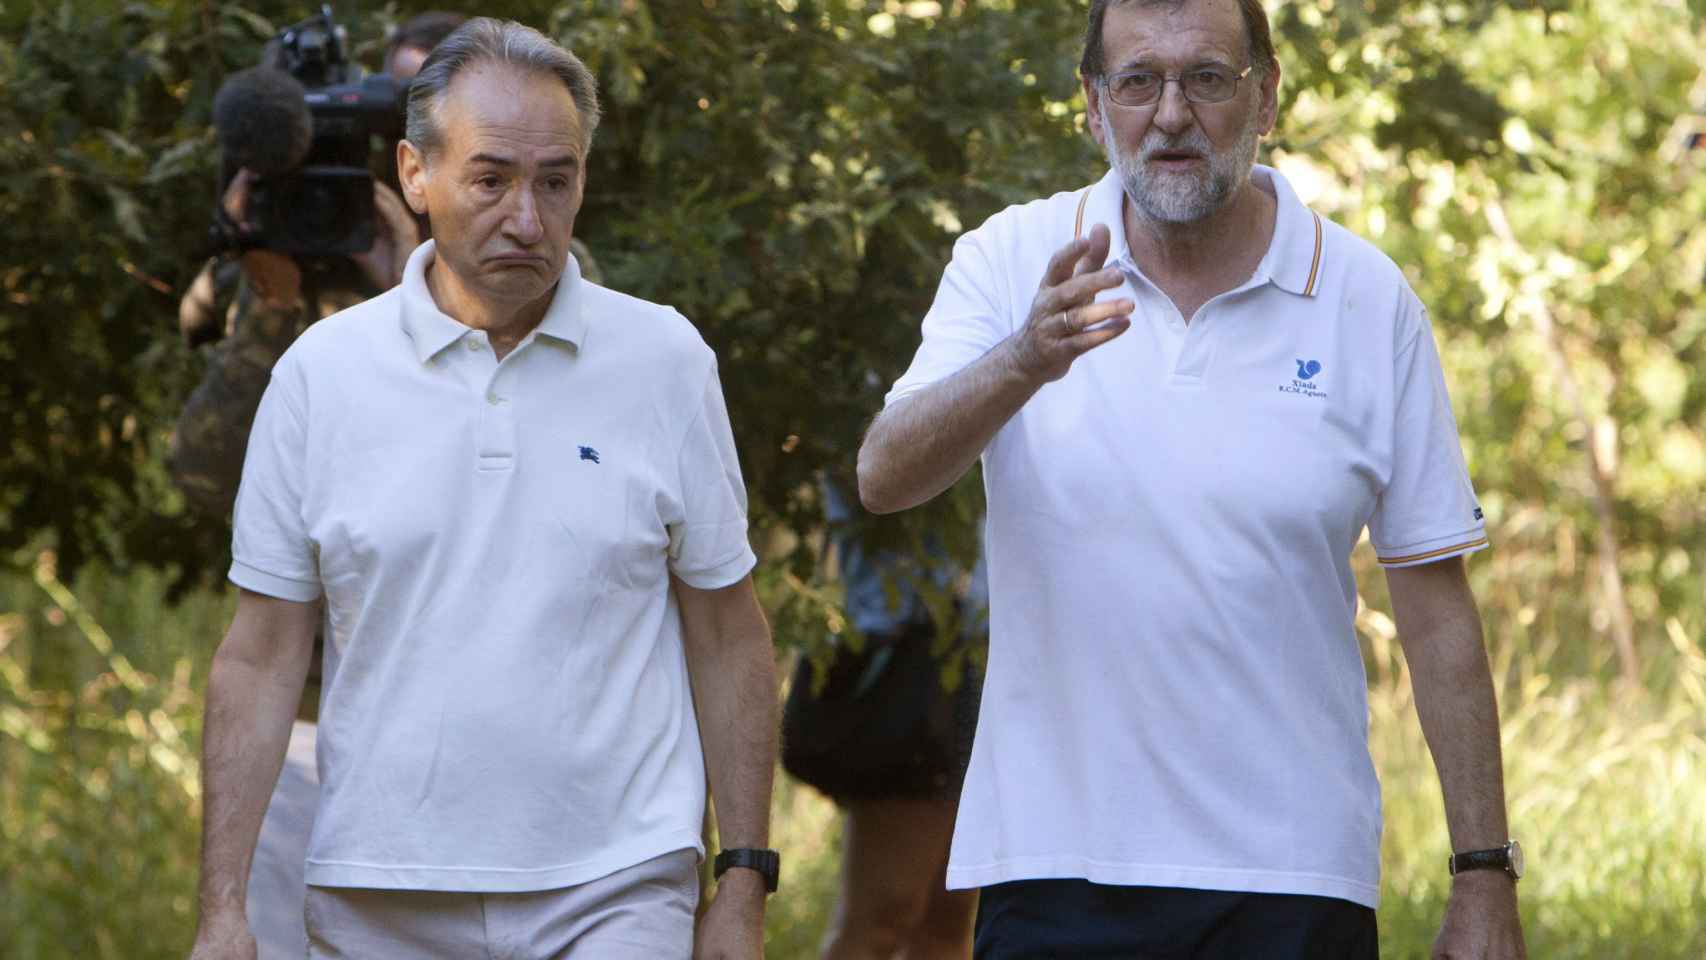 Mariano Rajoy y José Benito Suárez, durante uno de sus paseos matutinos.